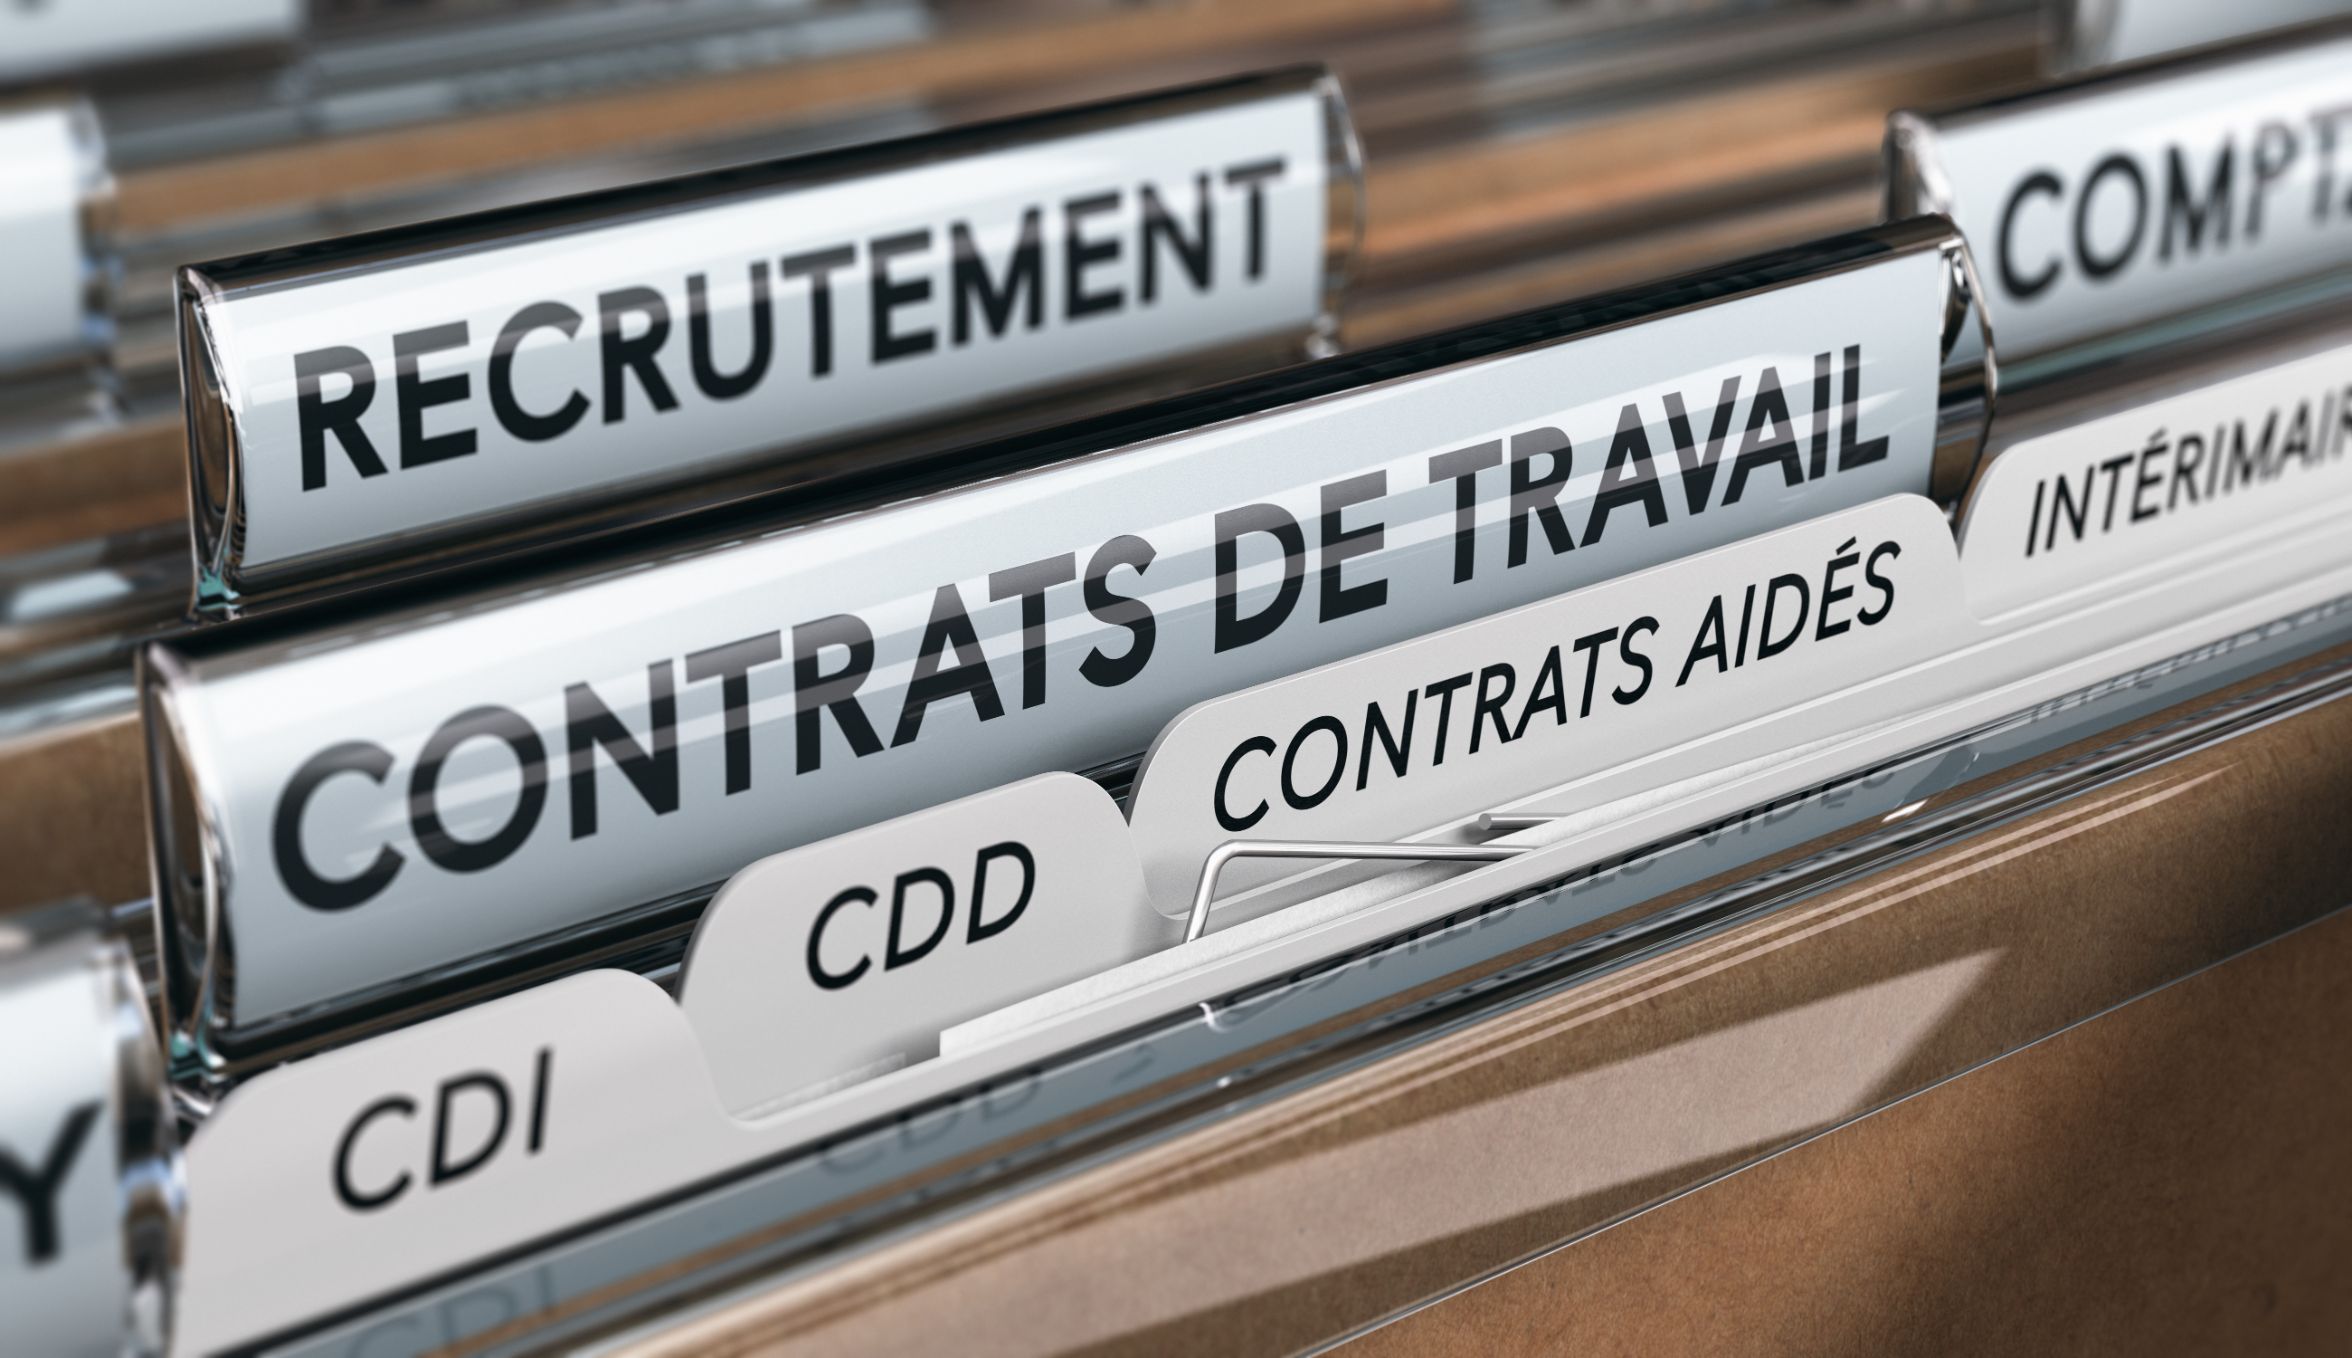 L’action en requalification du CDD en CDI se prescrit par deux ans à compter du dernier contrat